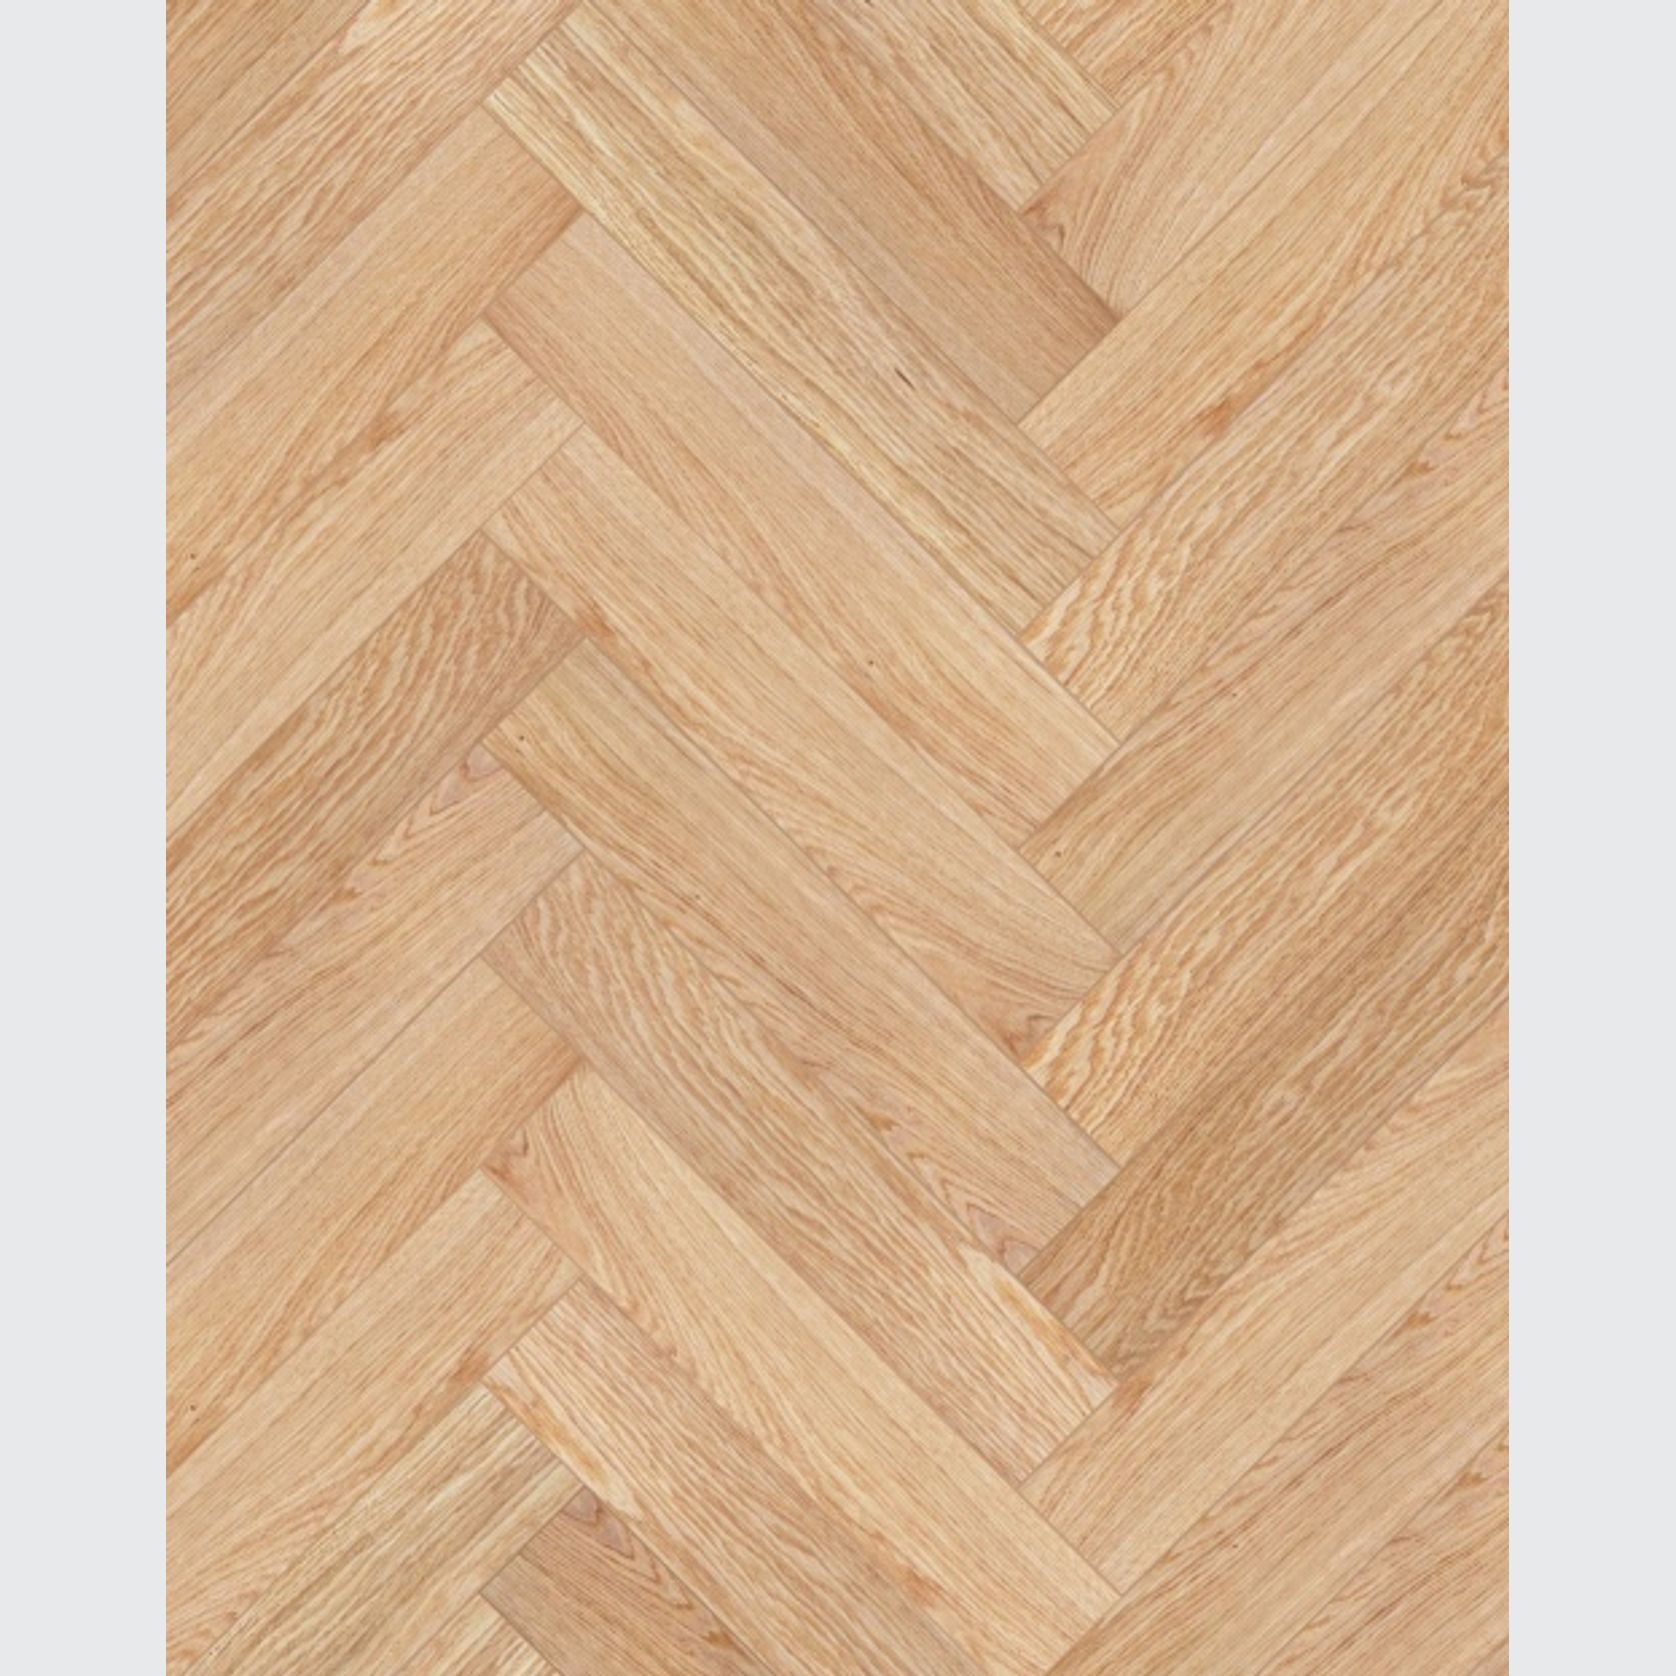 Smartfloor Natural Oak Herringbone Flooring gallery detail image